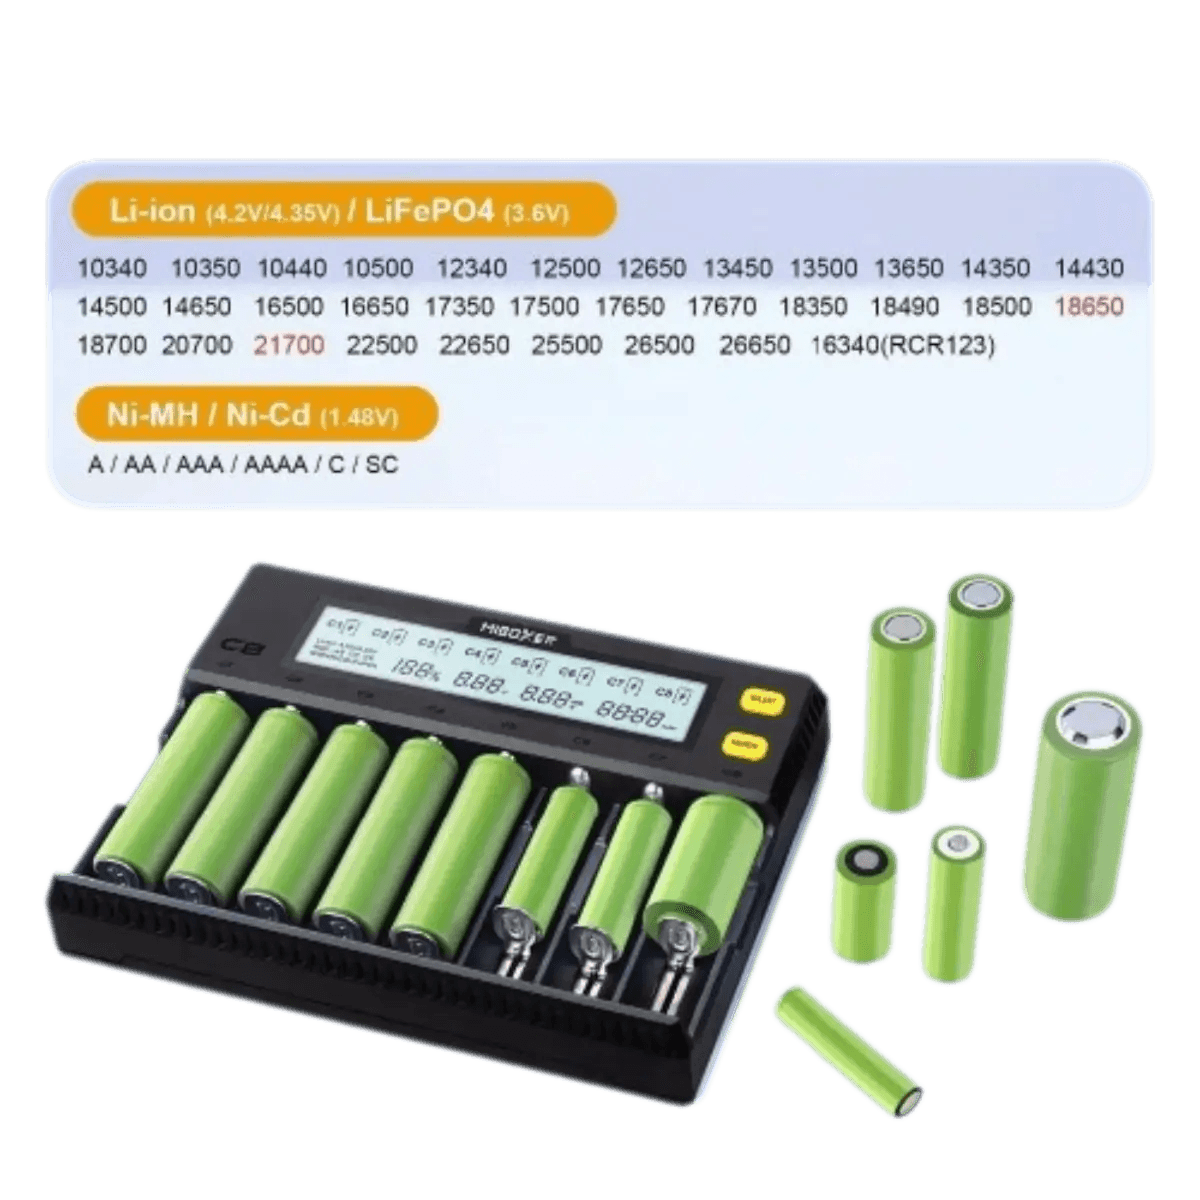 Accessoires Energie - Chargeur de Batterie Li-ion 18650